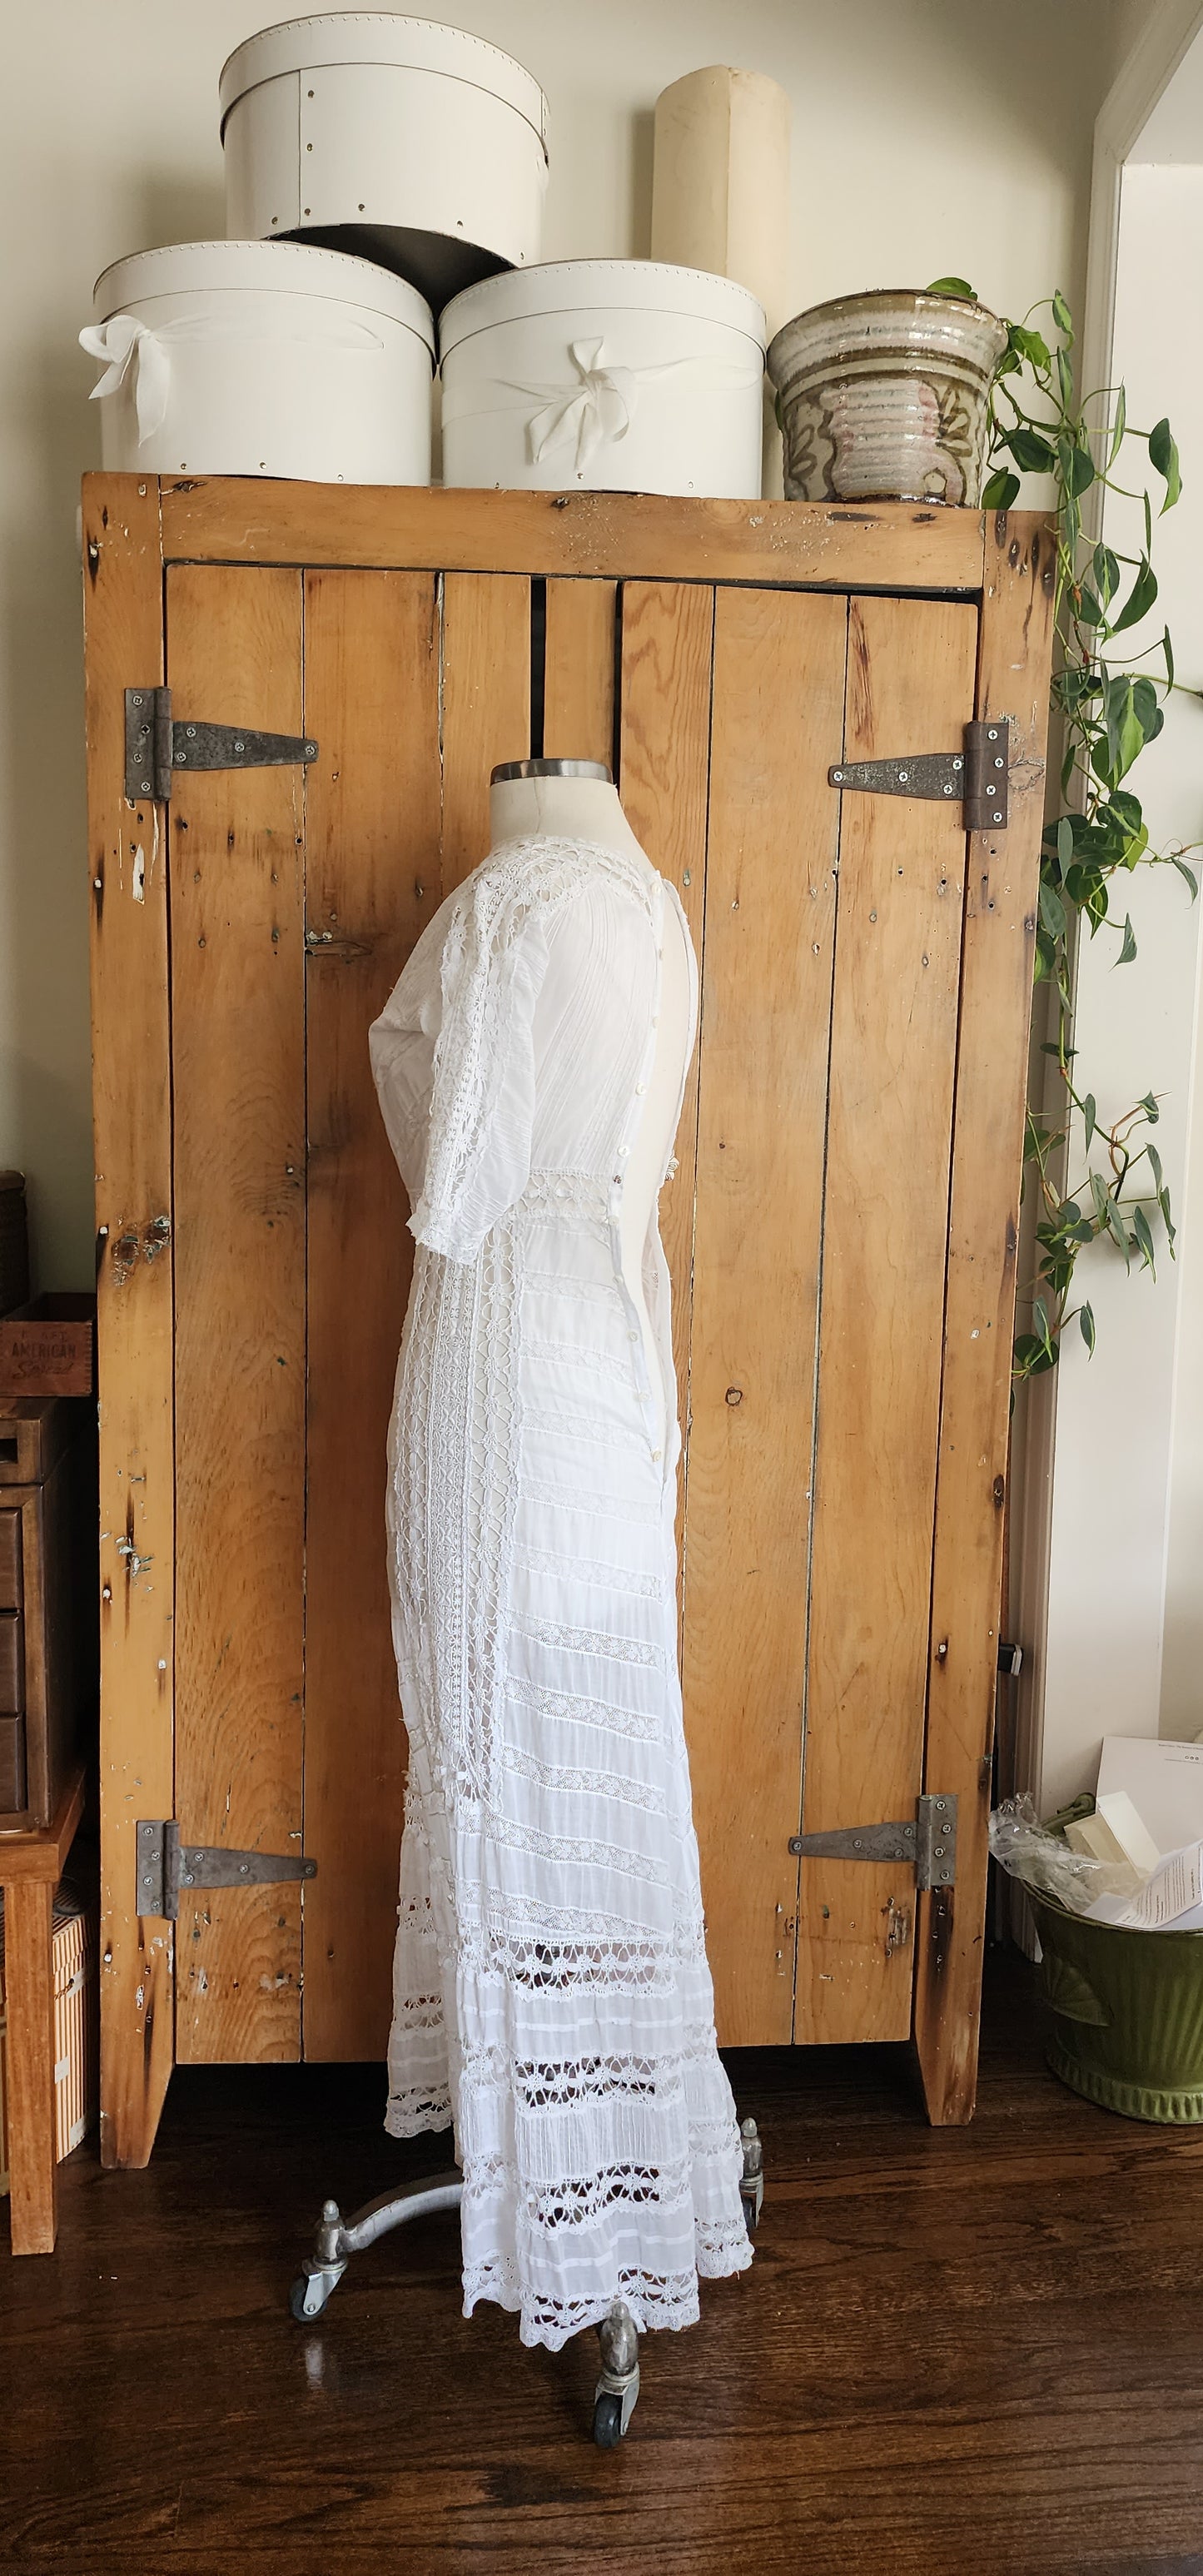 Edwardian Lingerie Dress White Cotton Crochet Lace XS